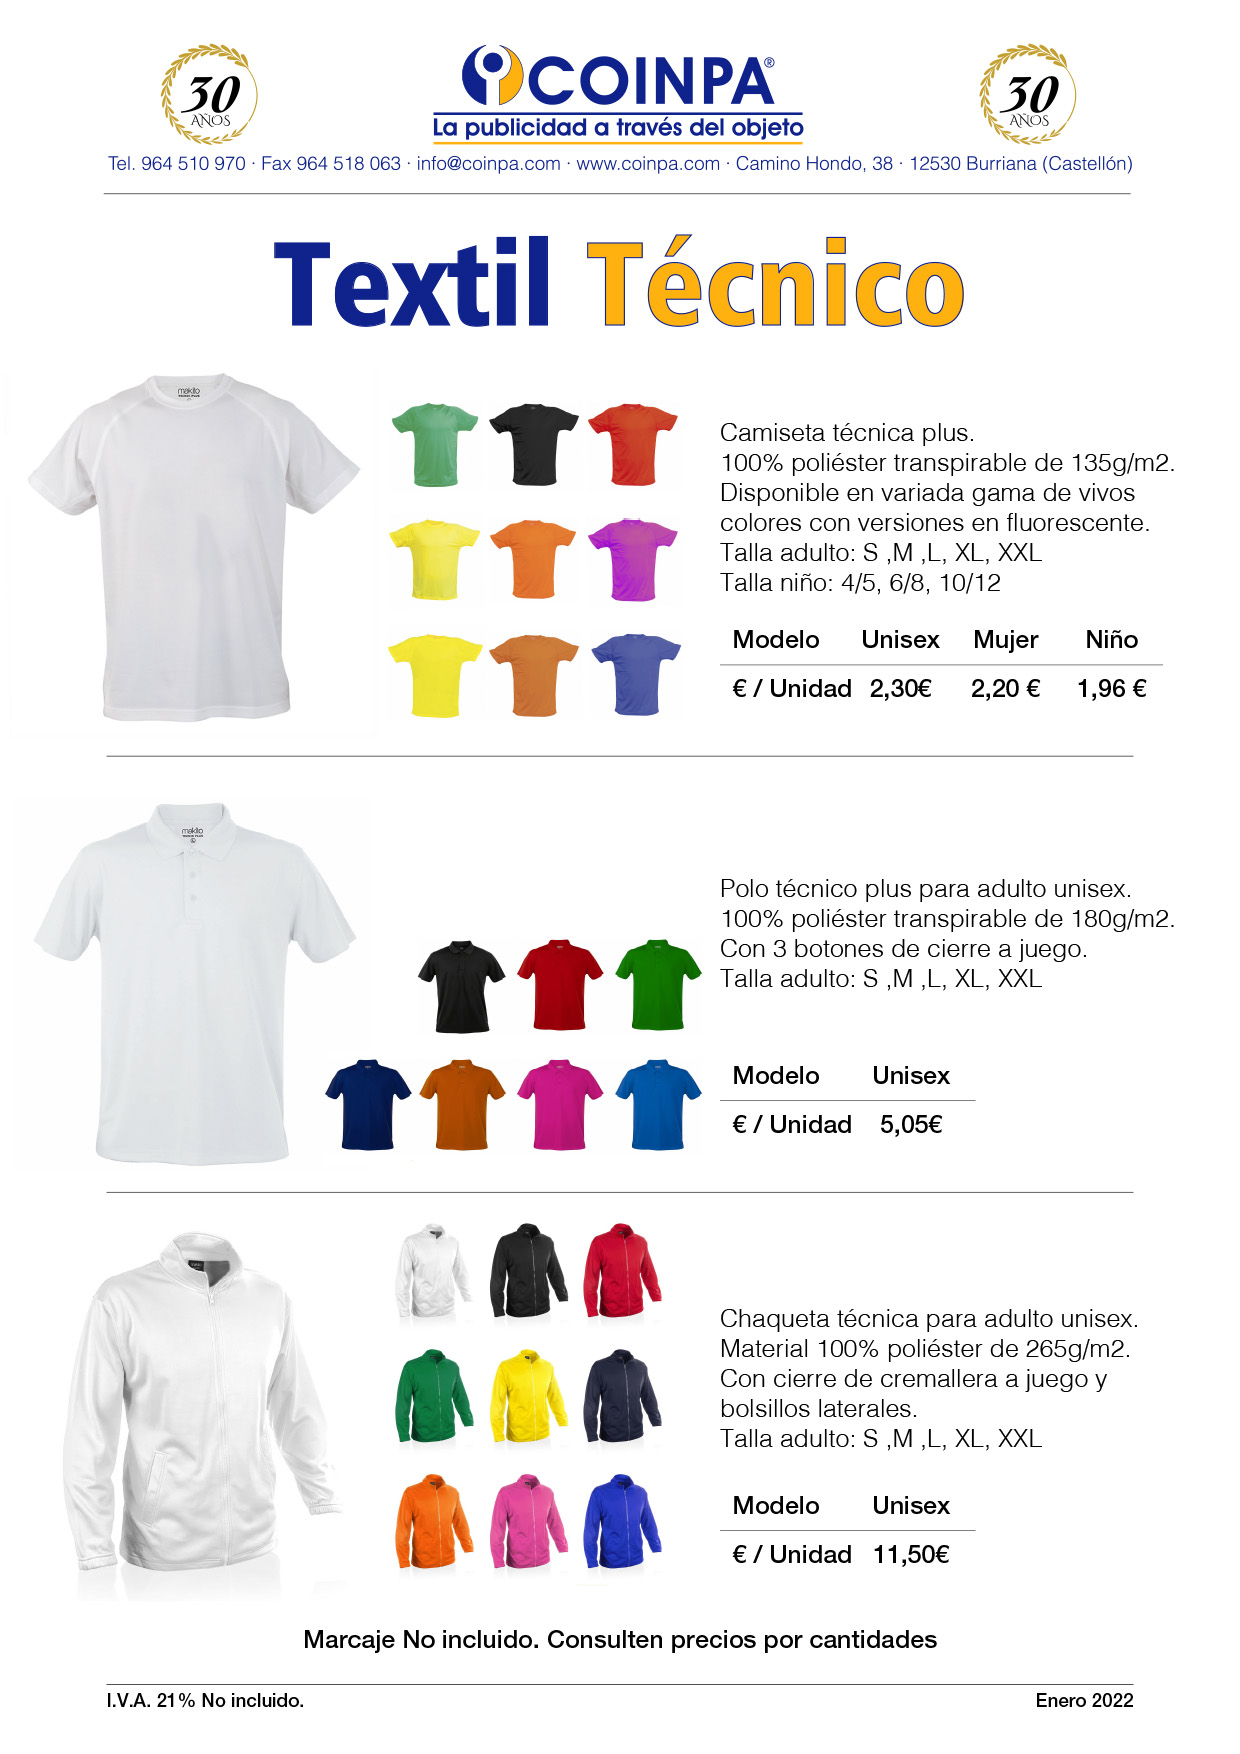 COINPA-Promoción Textil Técnico